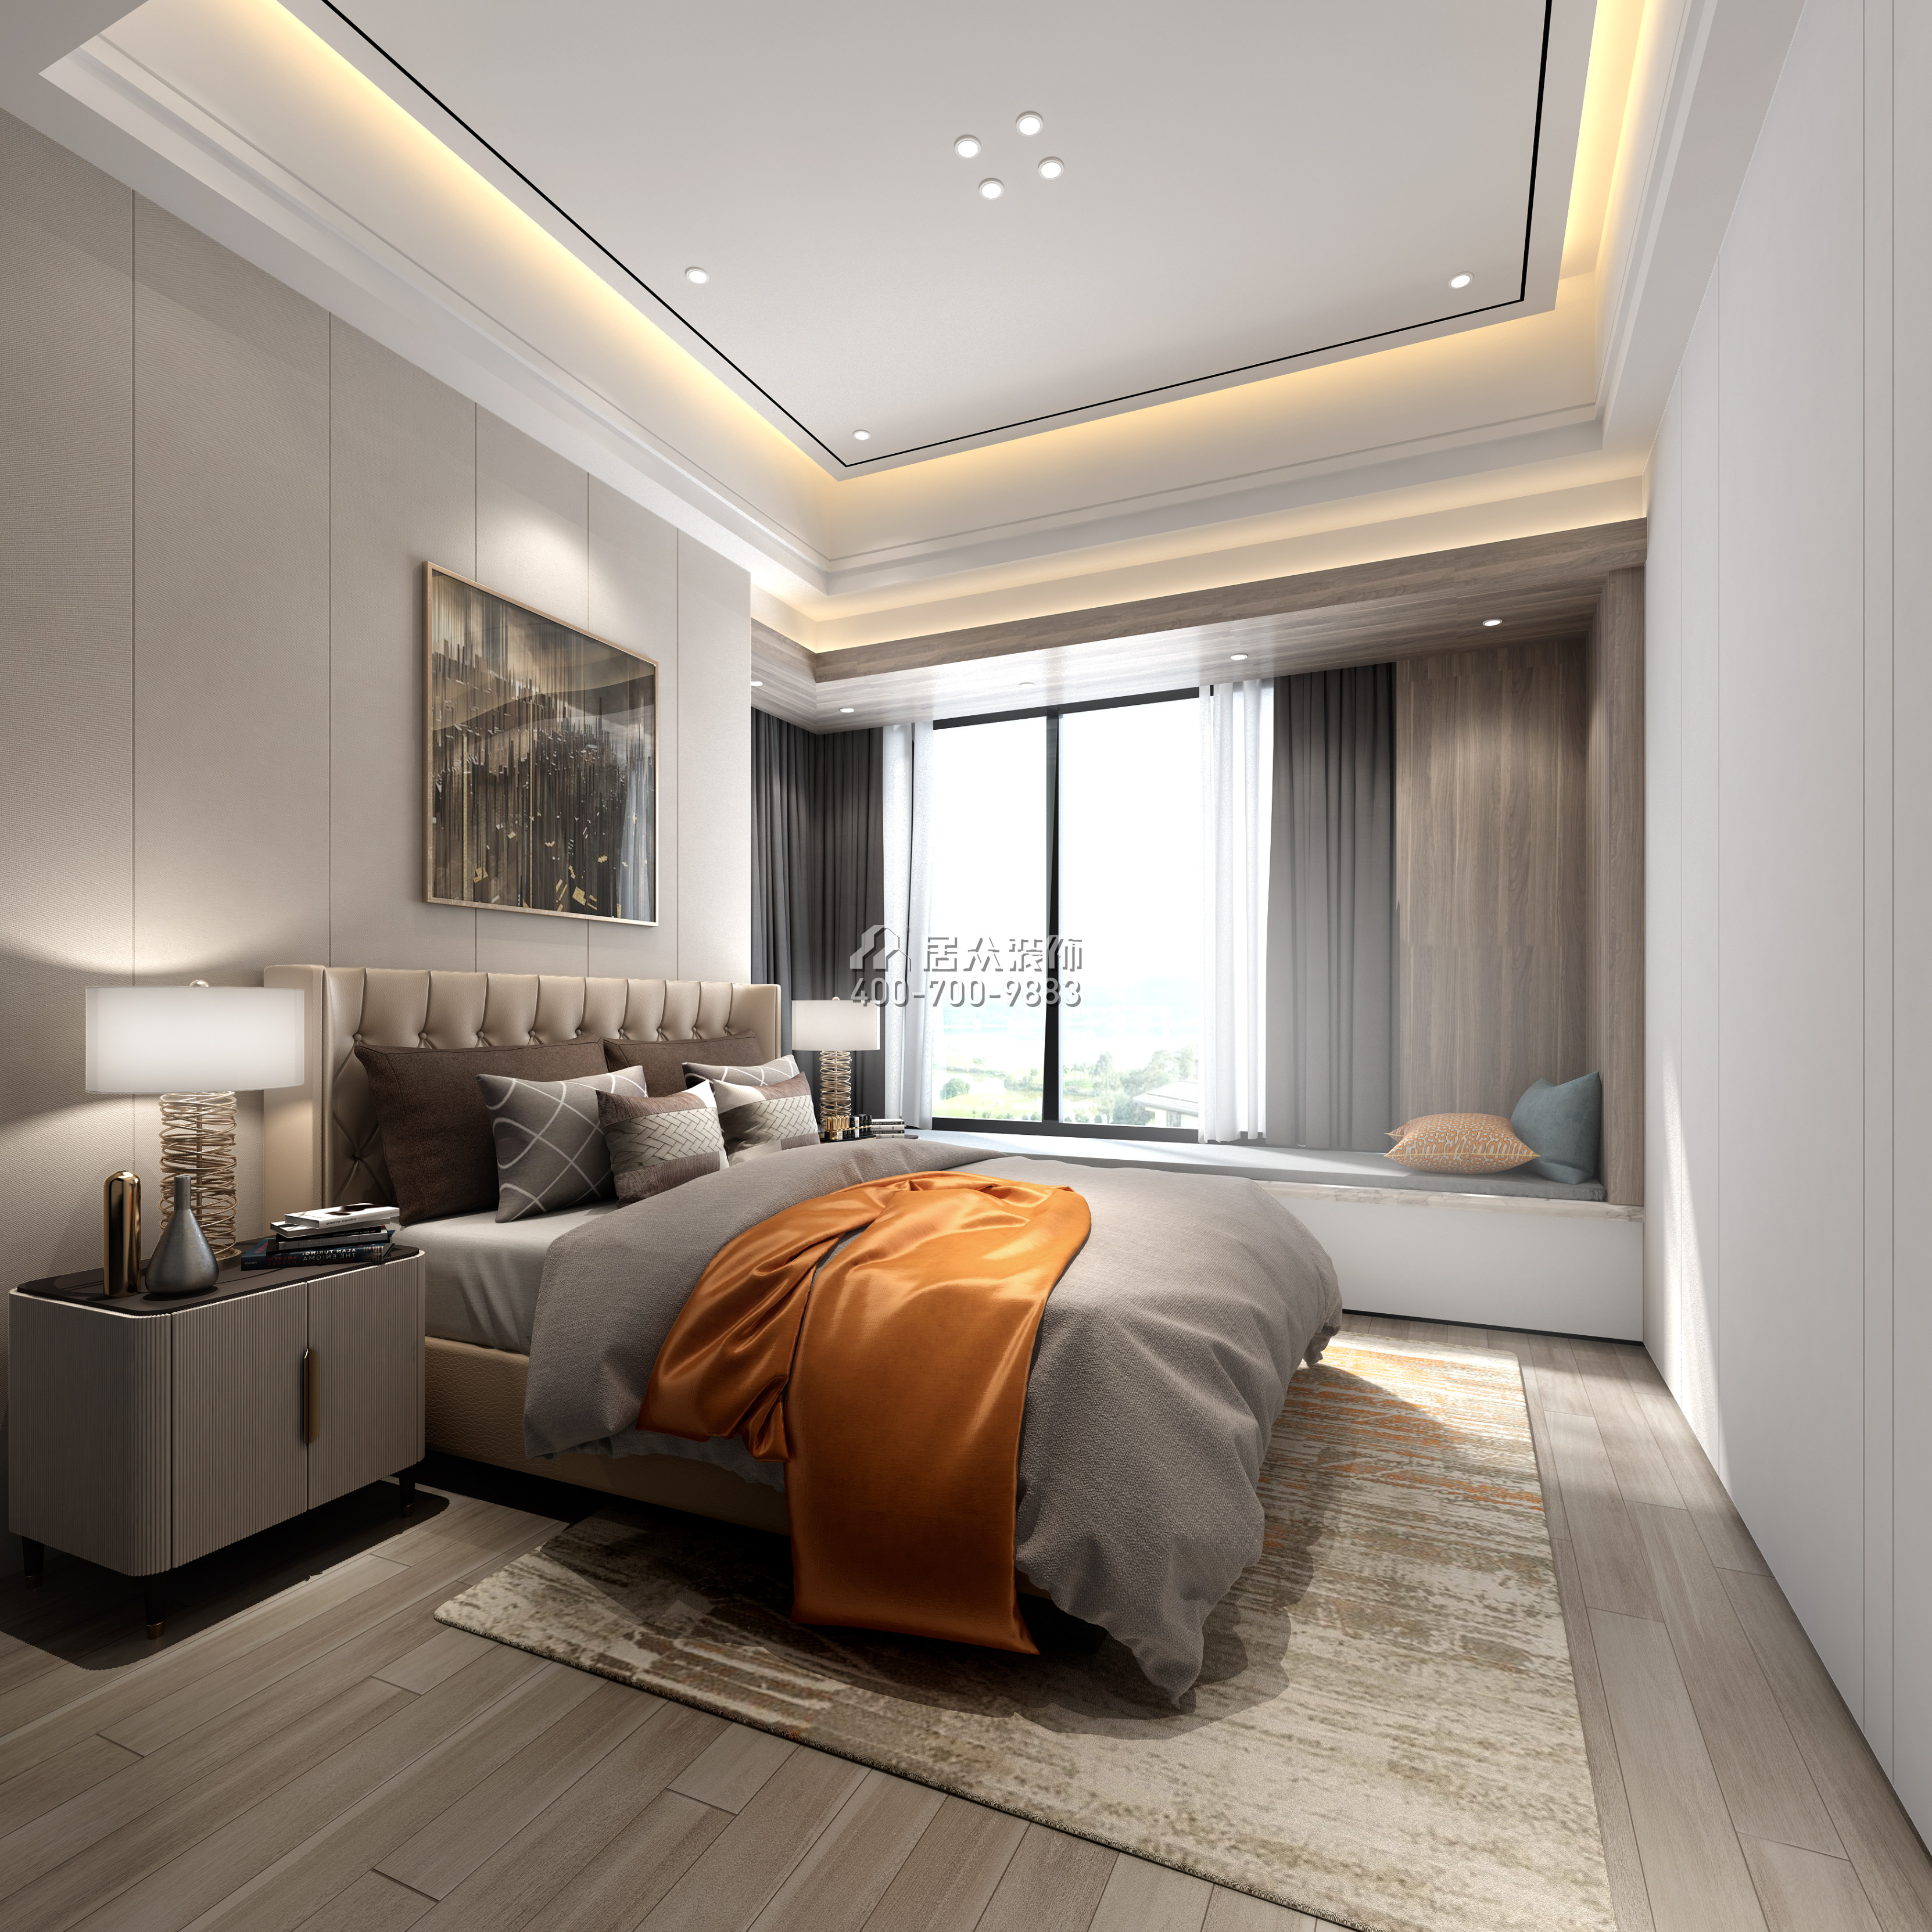 山語海260平方米現代簡約風格平層戶型臥室裝修效果圖